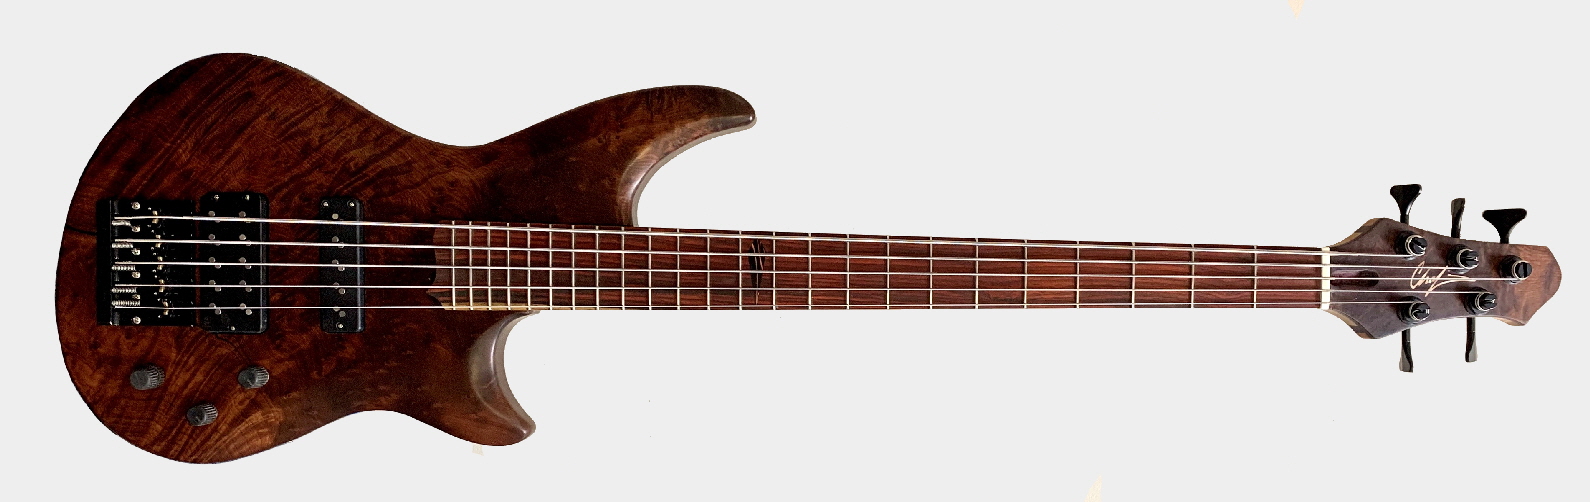 Chafin Ozona 5 Bass